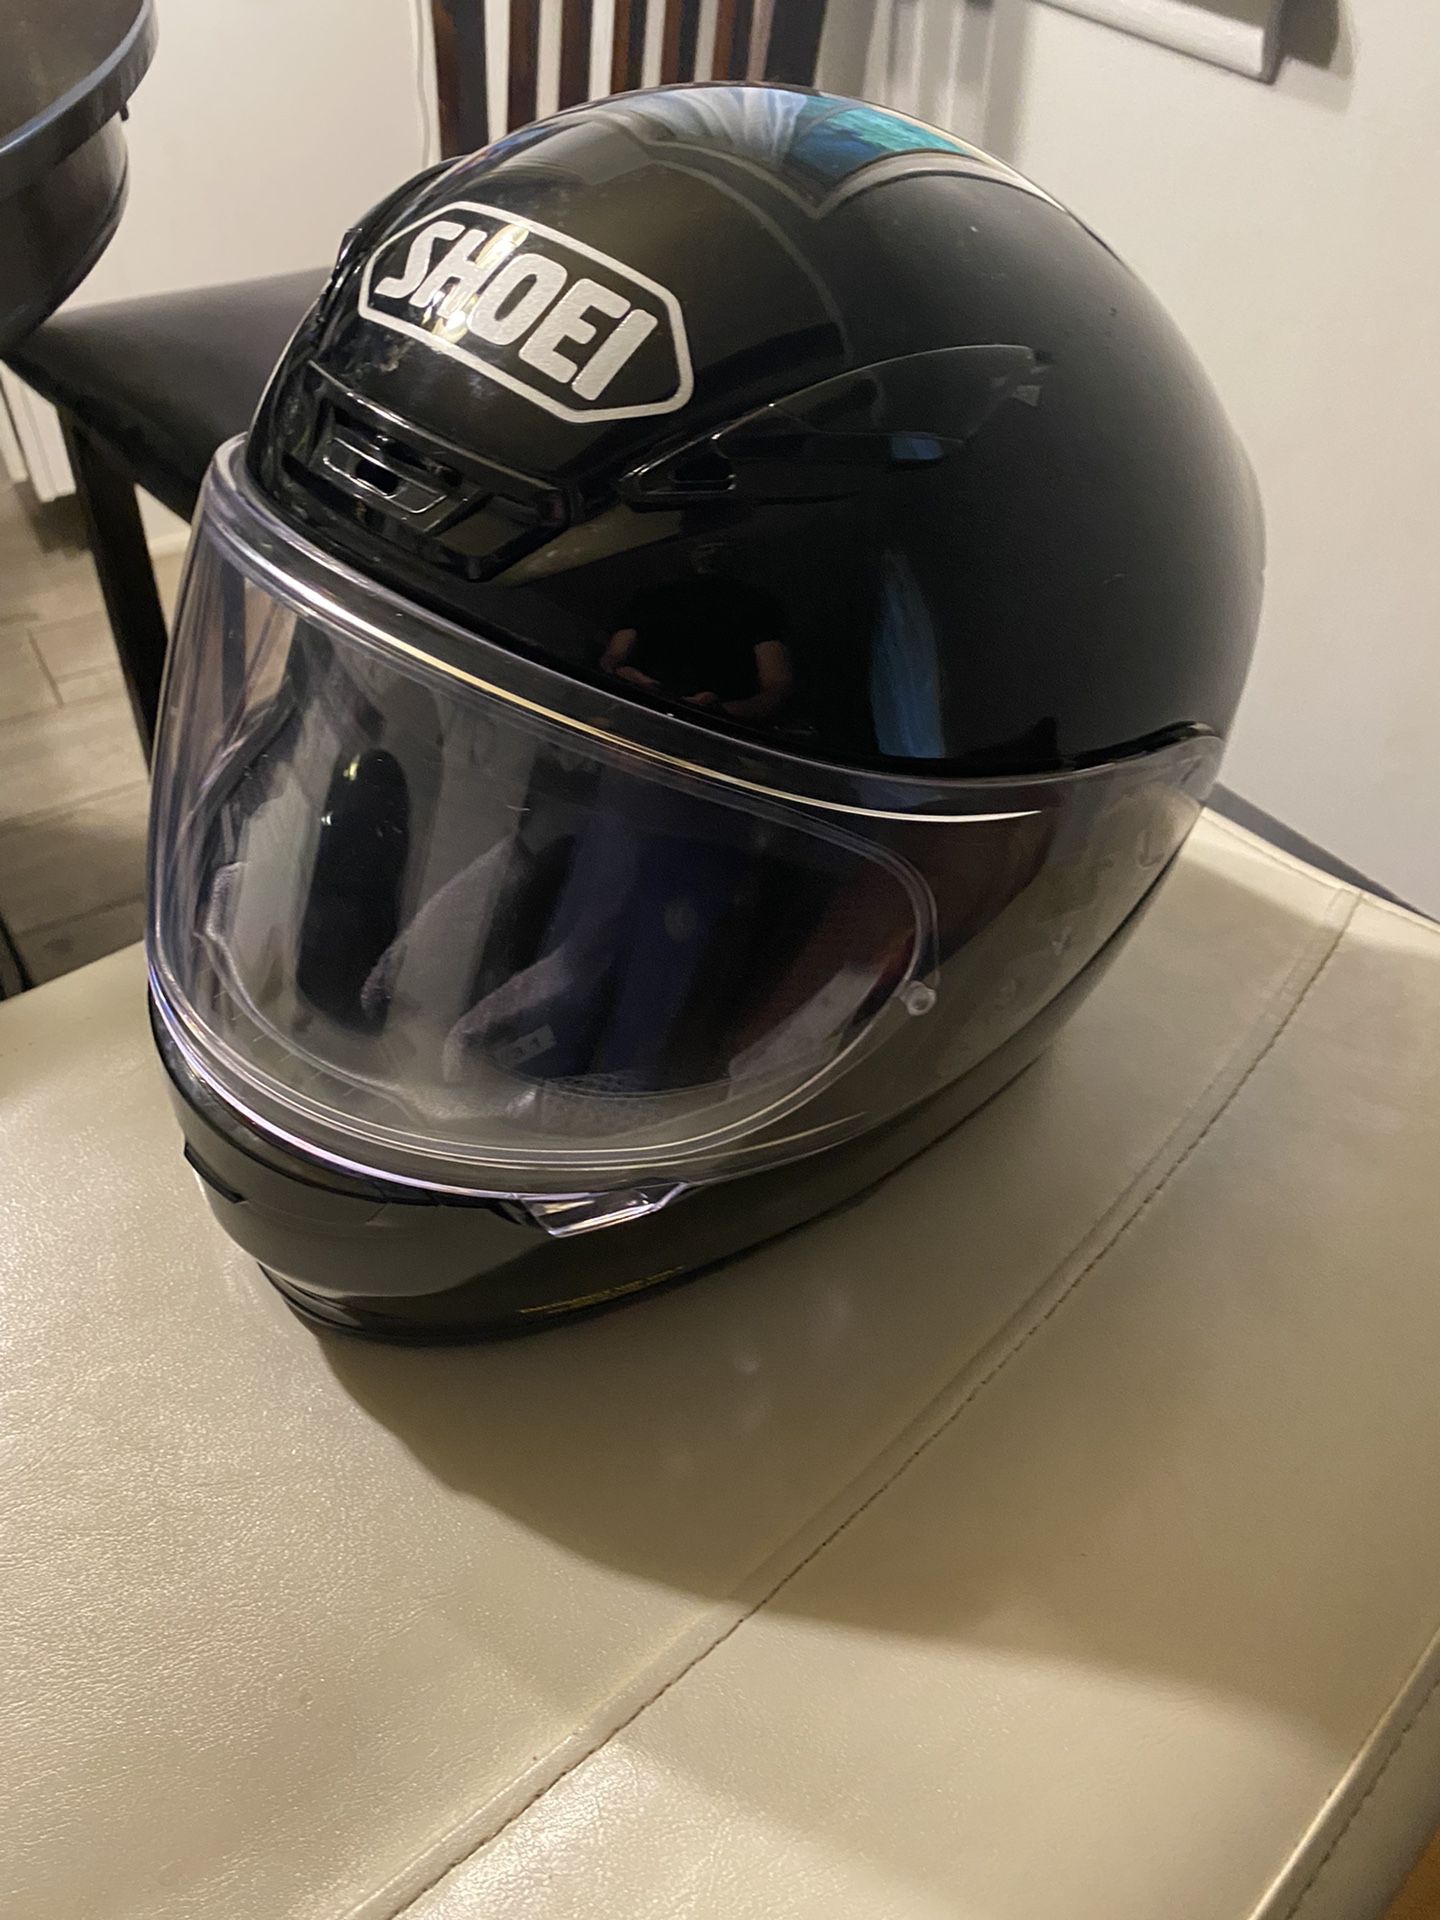 Shoei Motorcycle Helmet 